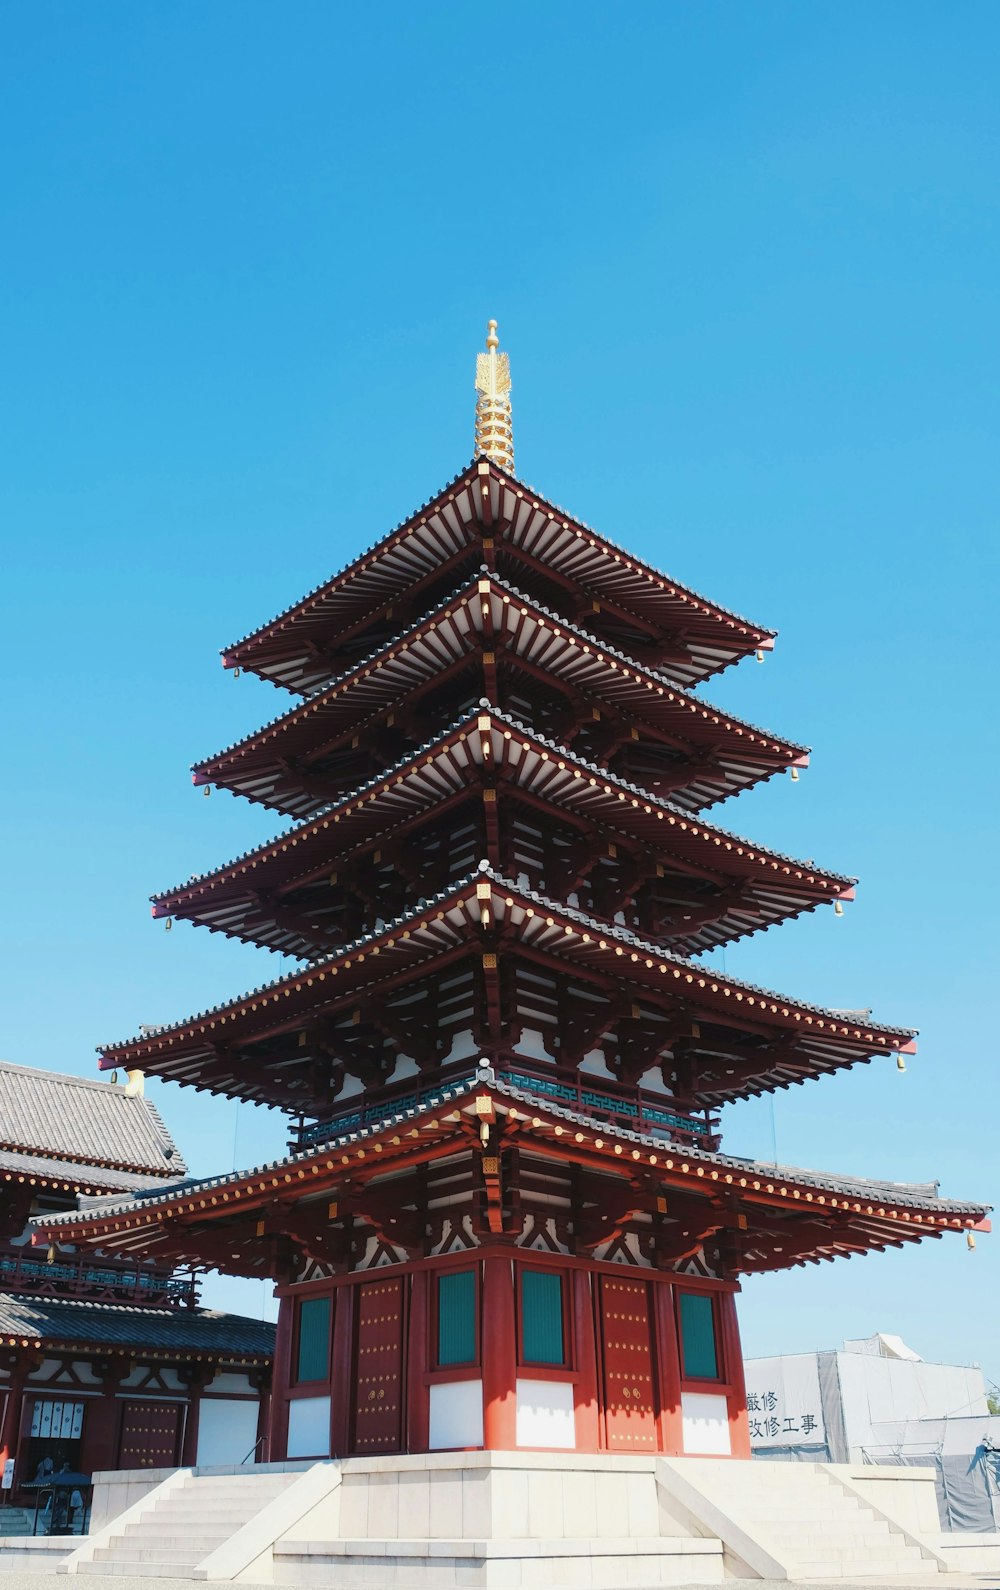 Templo de la pagoda negra bajo el cielo azul durante el día